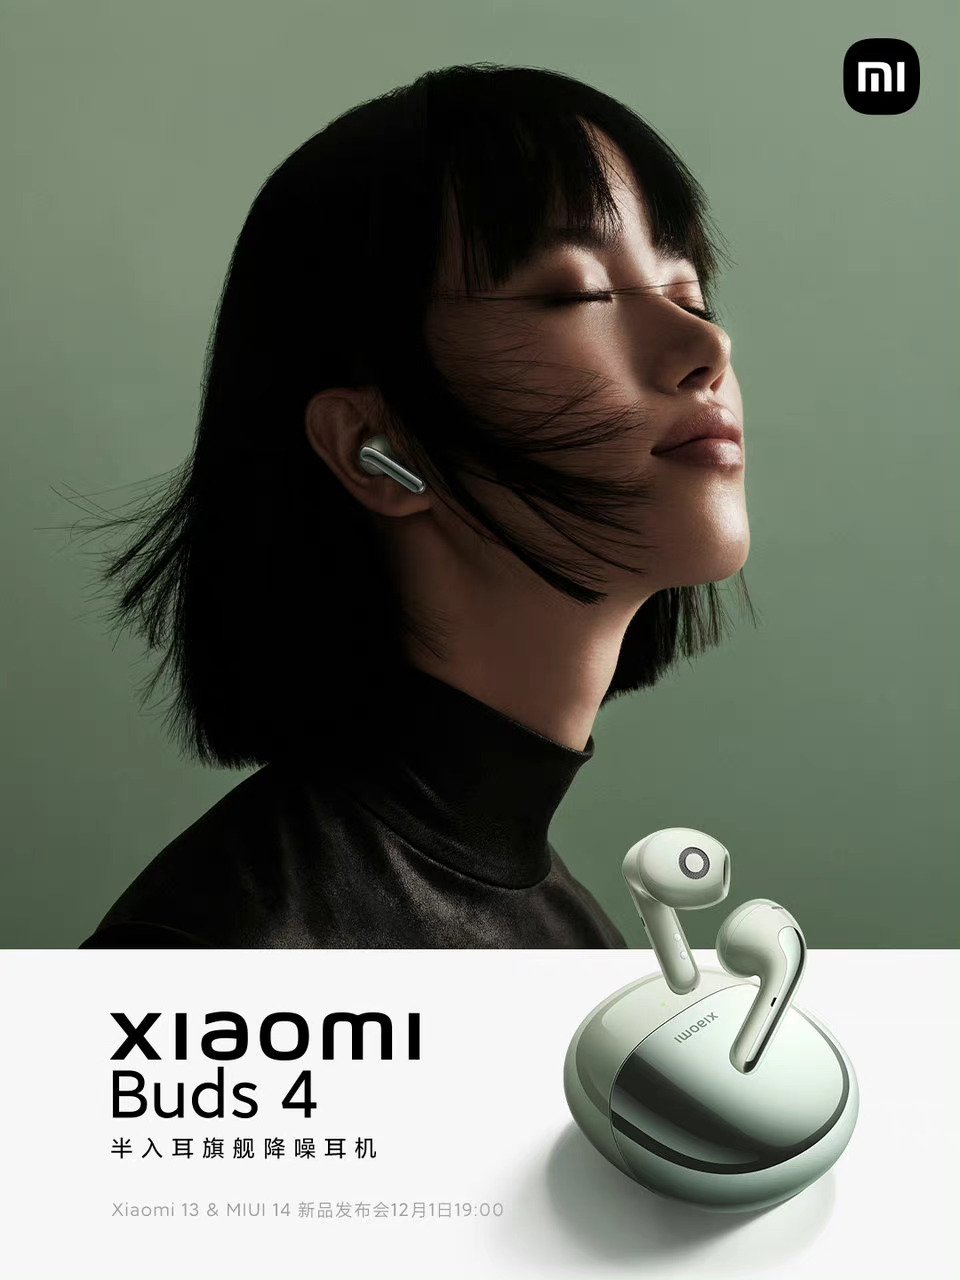 xiaomi buds 4 słuchawki bezprzewodowe data premiery